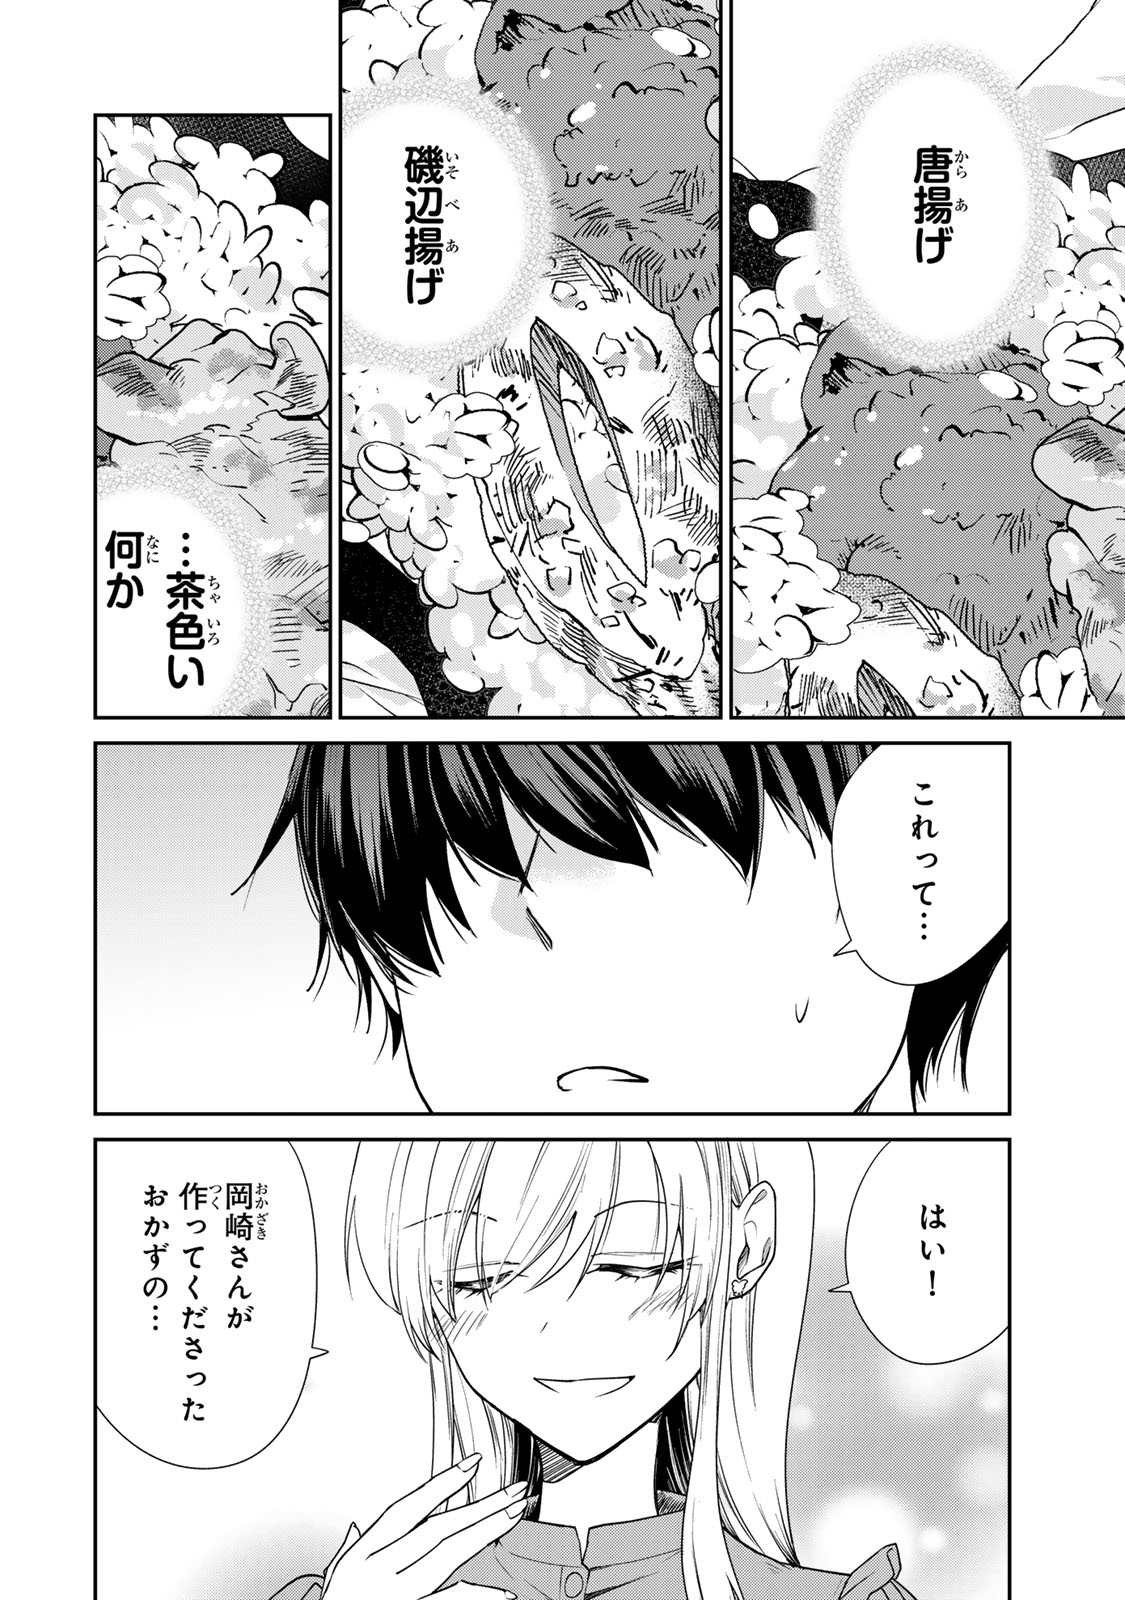 Kyou no Ohiru wa Nan desu ka? - Chapter 10.5 - Page 2